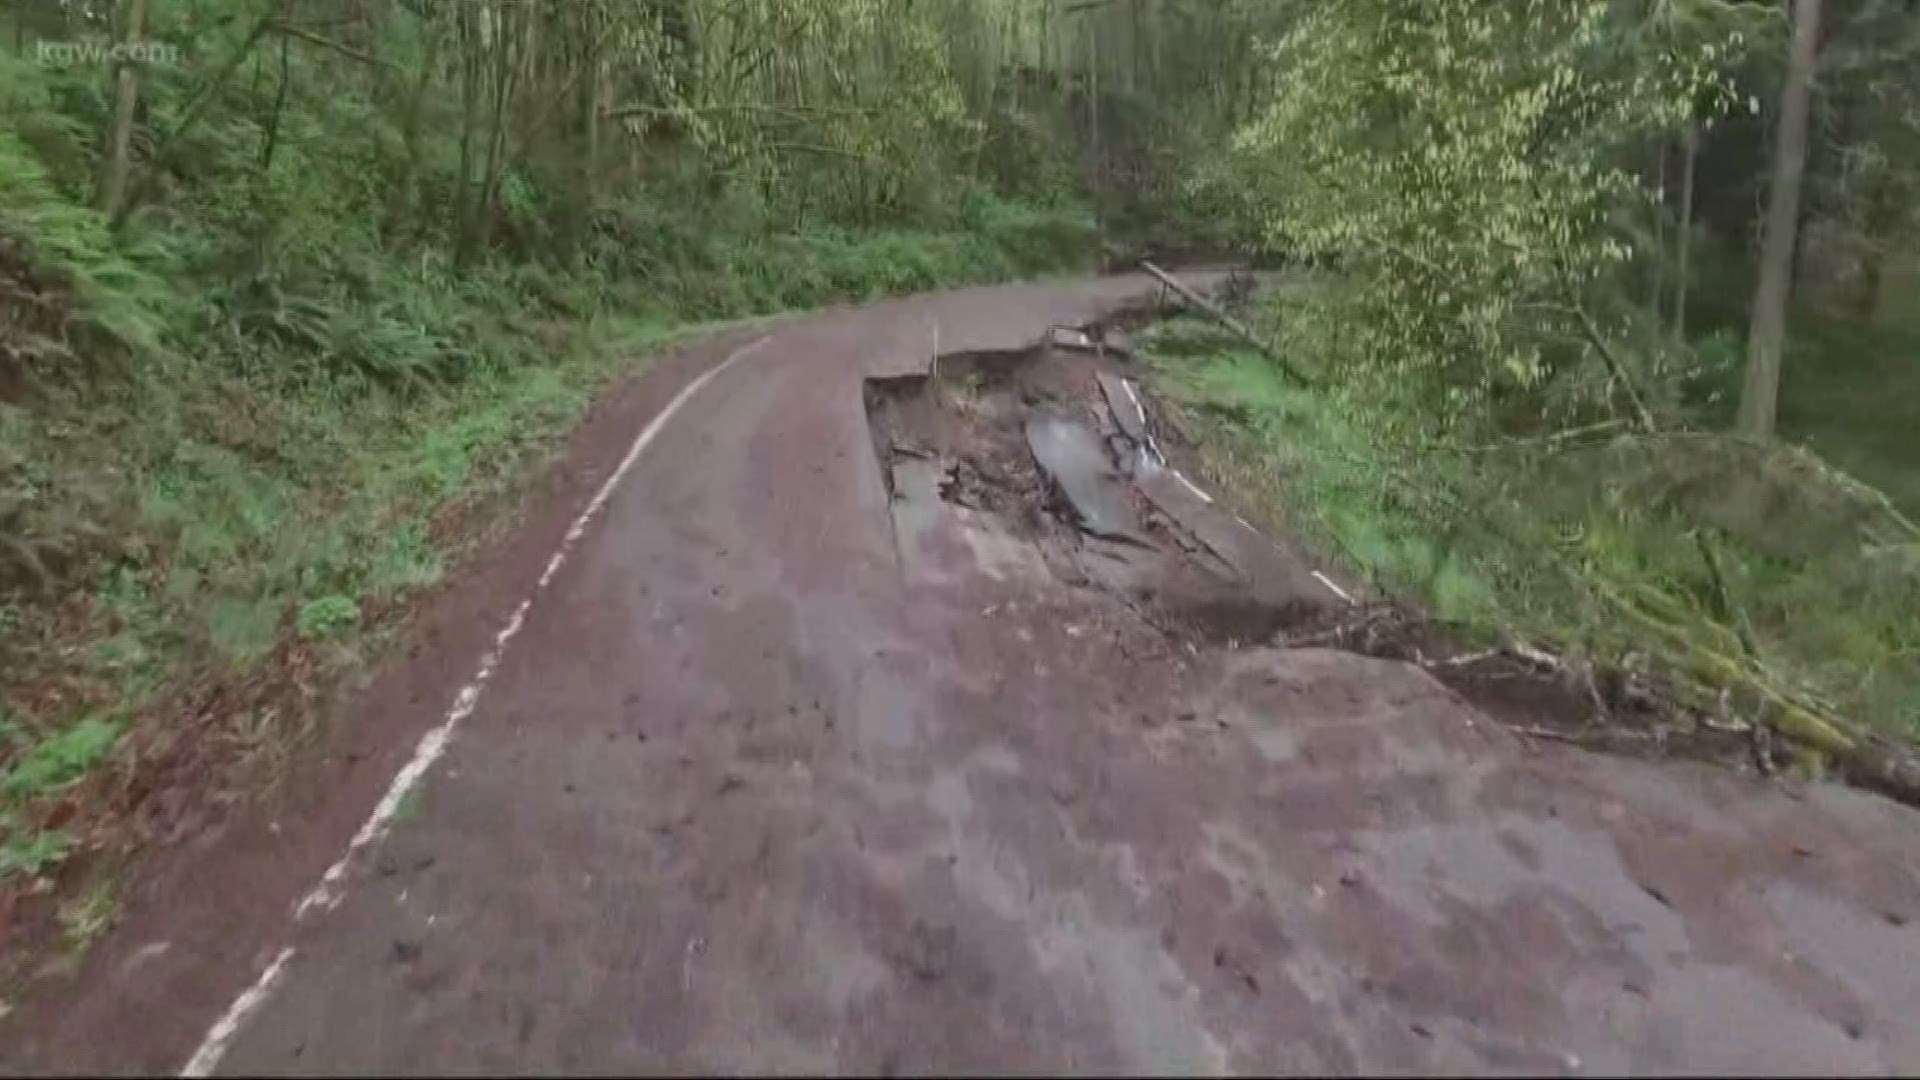 New maps show Portland's landslide risk.